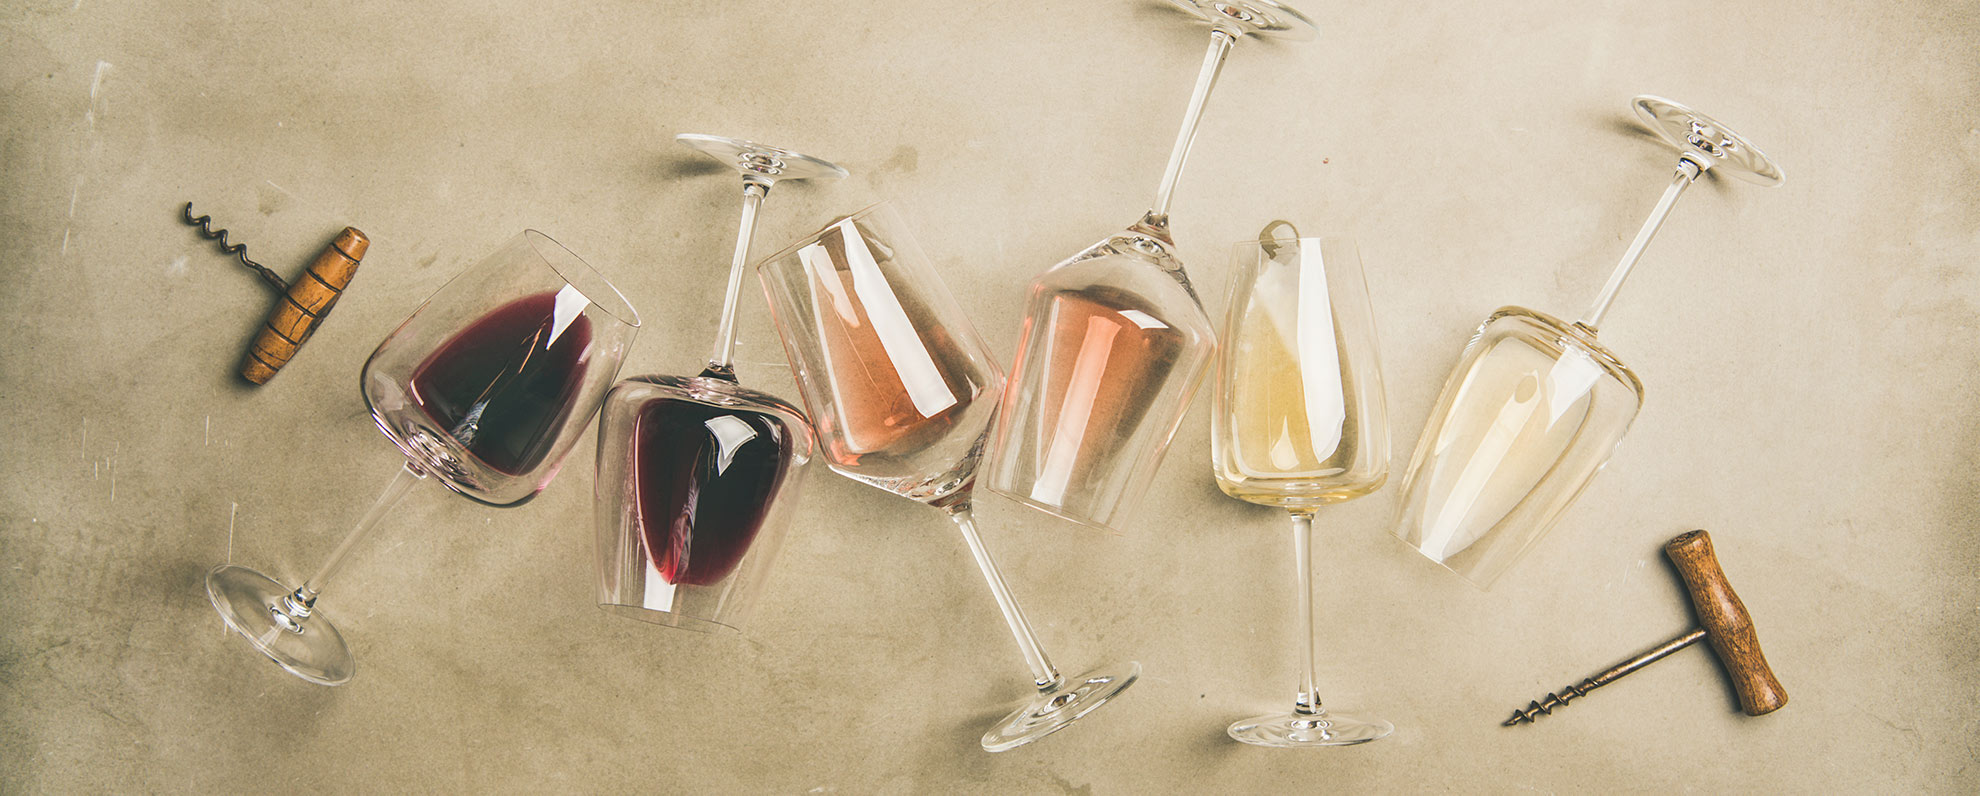 Viinitrendit 2020, roseeprosecco, rieslingrosee ja lauri tähkä -viini